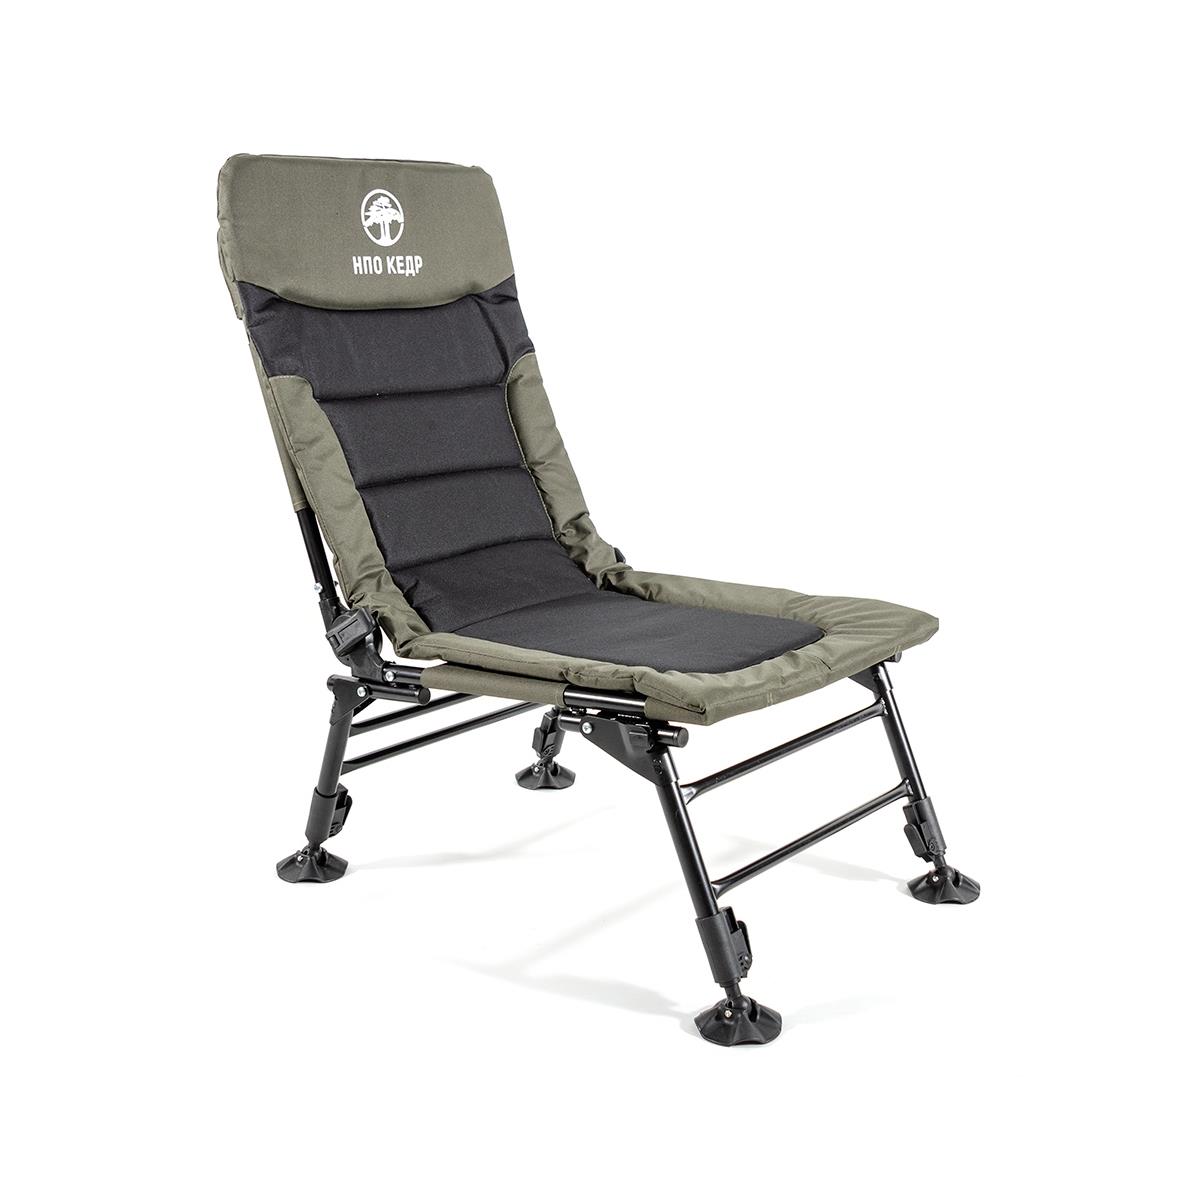 Кресло карповое без подлокотников (SKC-02)  Кедр металлическая крашеная канистра кедр